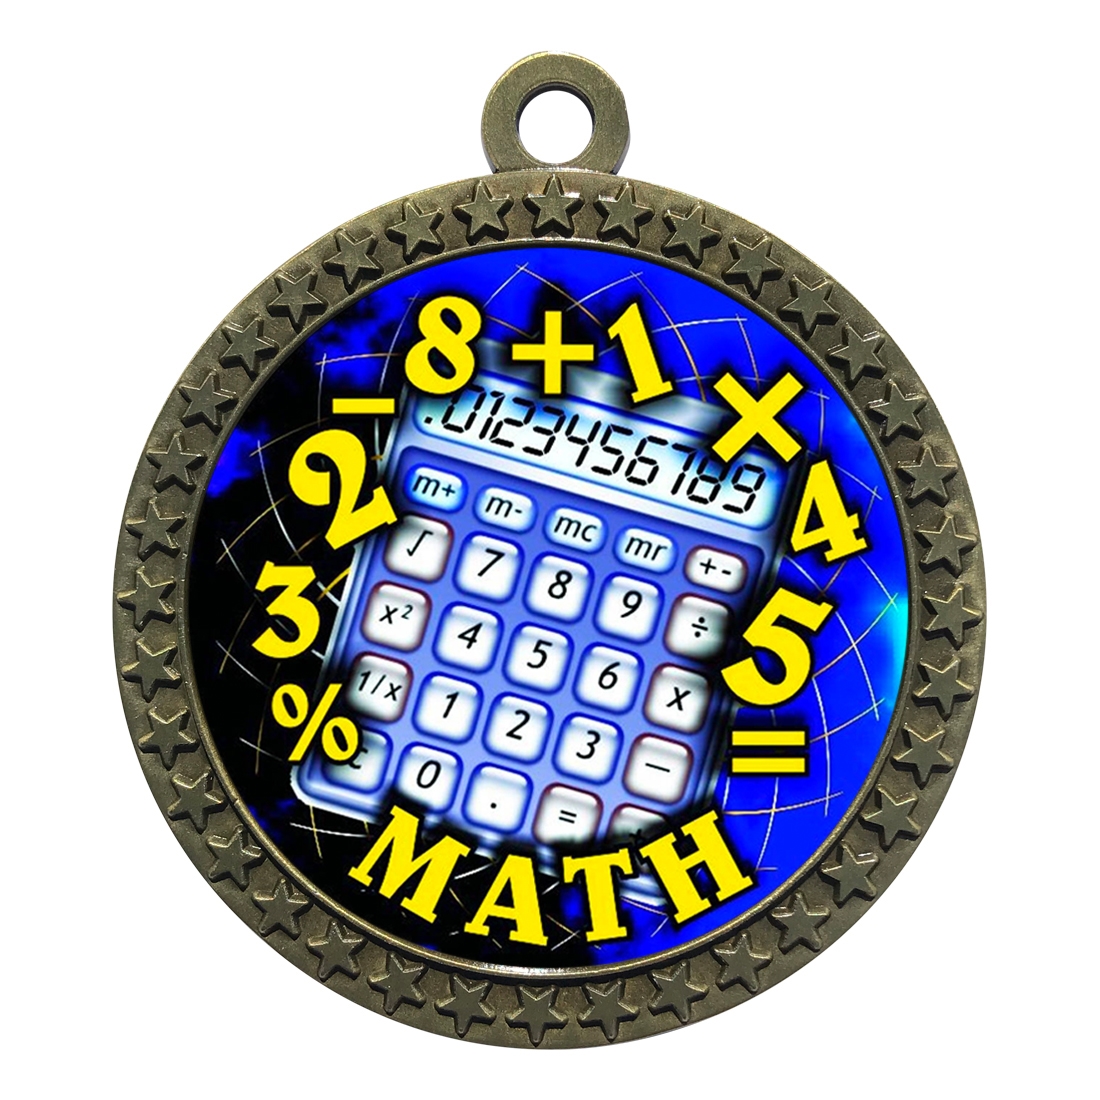 2-1/2" Math Medal